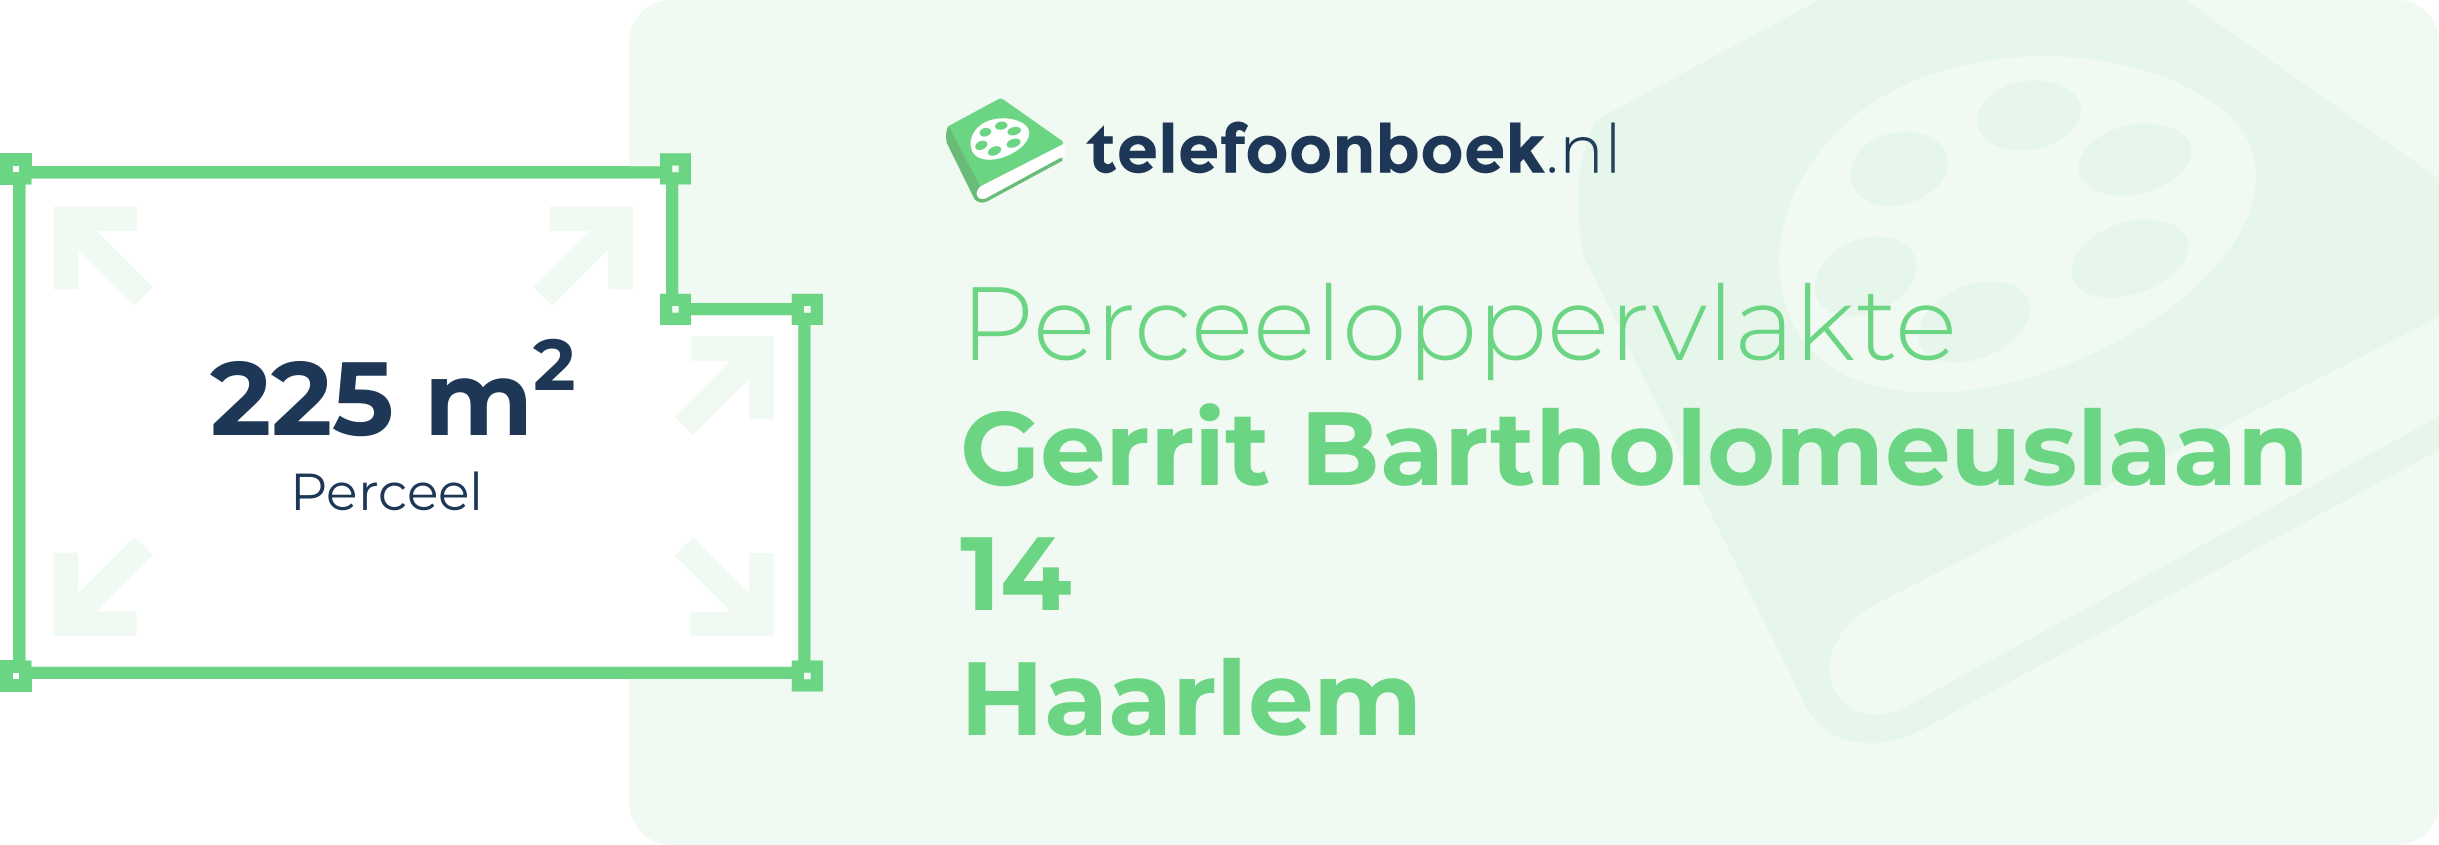 Perceeloppervlakte Gerrit Bartholomeuslaan 14 Haarlem